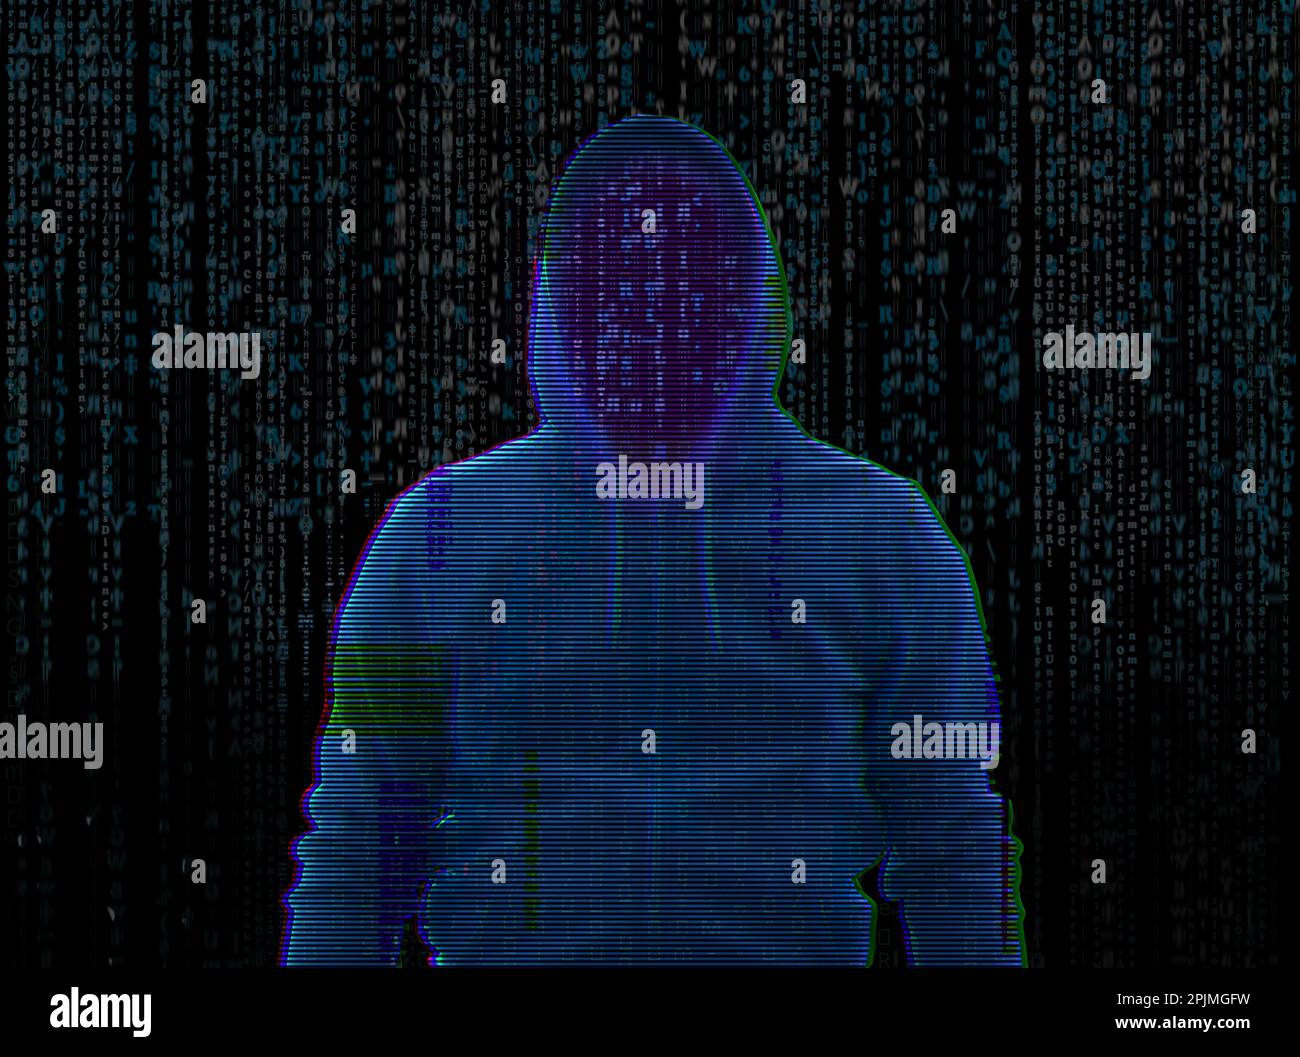 Silhouette de hacker anonyme et de code binaire numérique sur fond sombre. Concept de cyber-attaque Banque D'Images